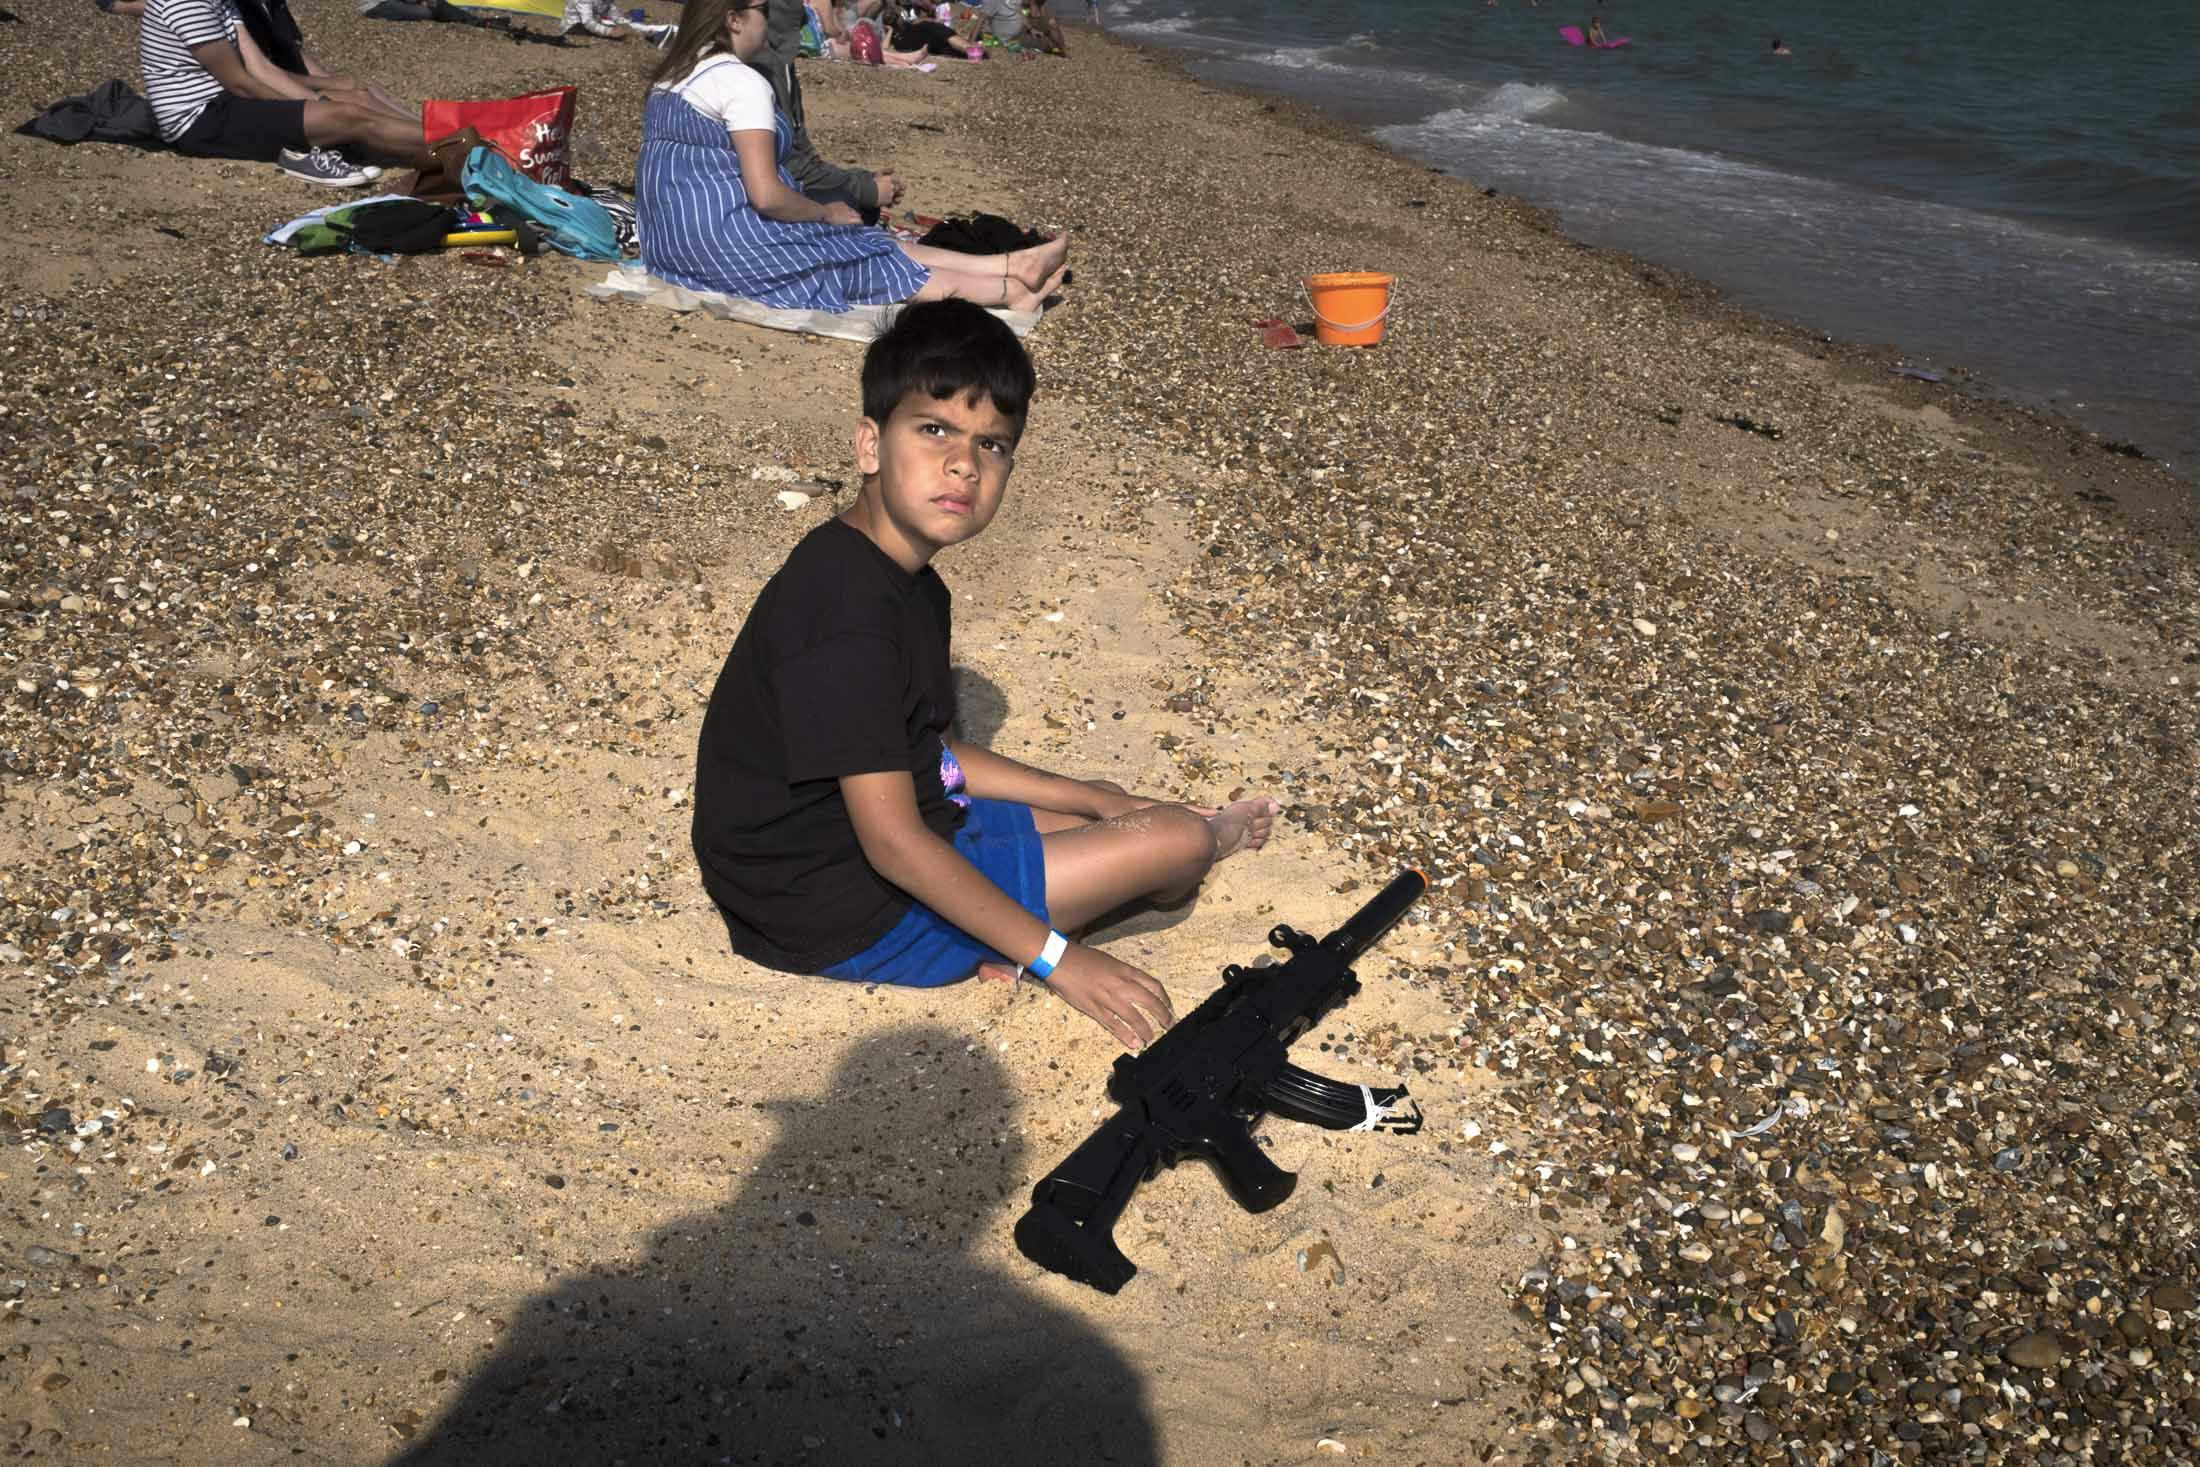 Boy sitting on beach at sunset with toy machine gun